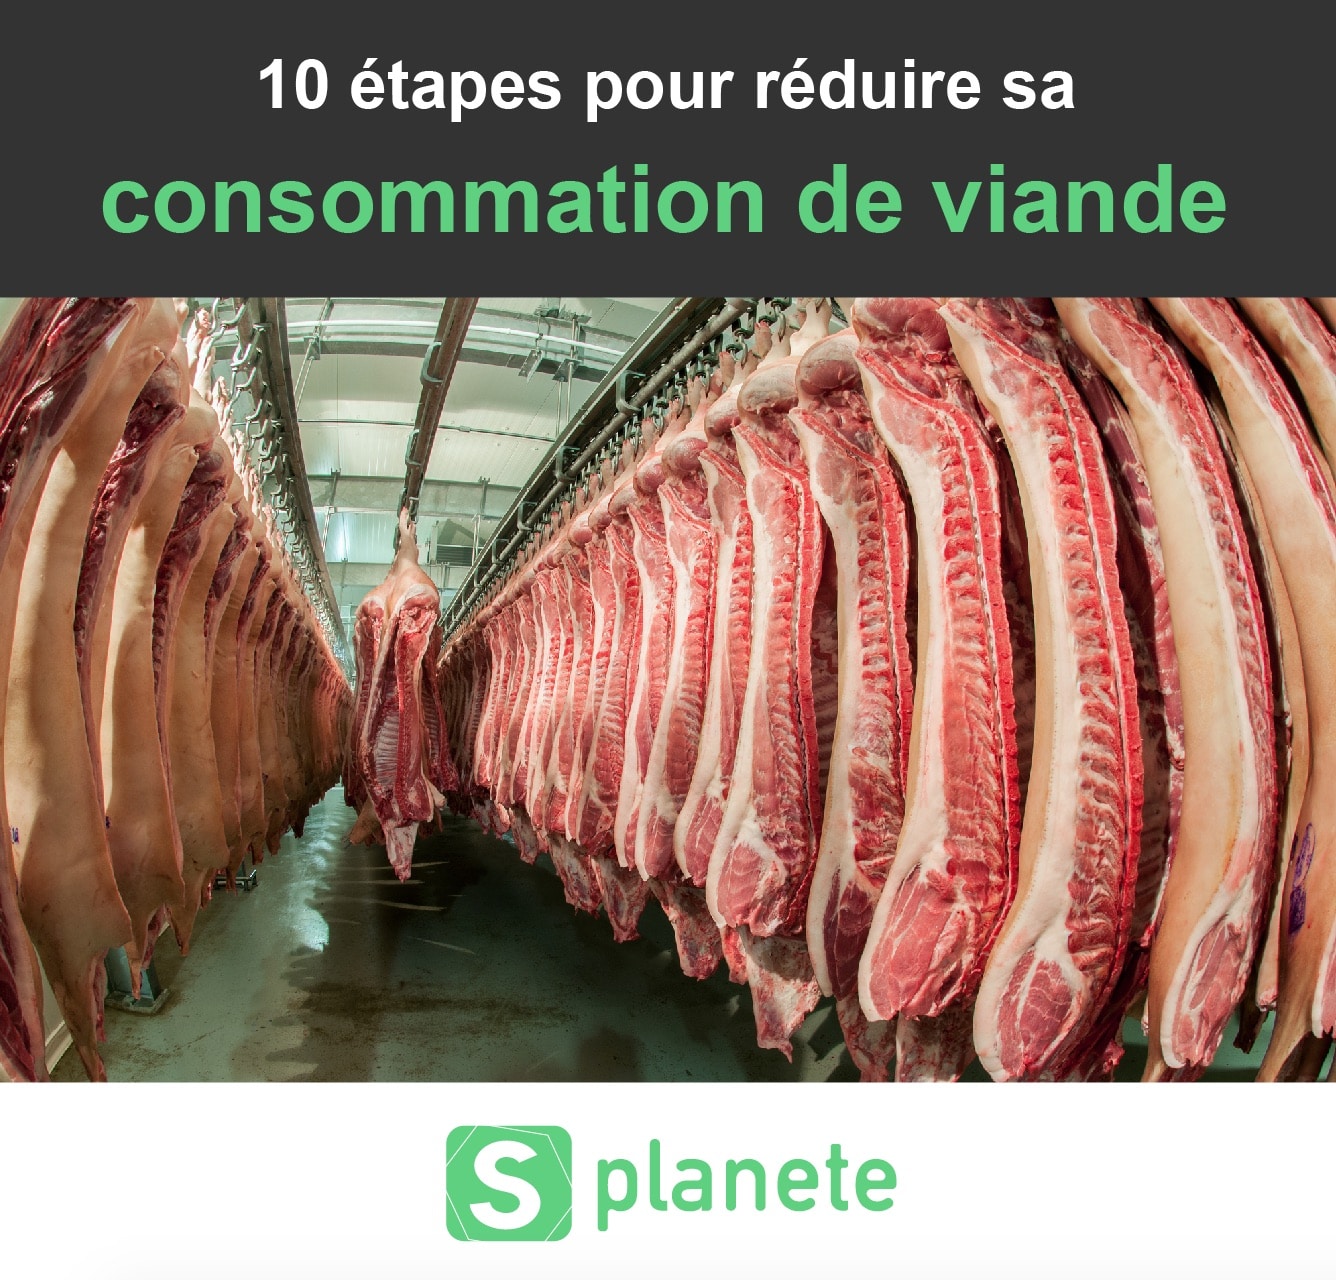 10 étapes pour réduire sa consommation de viande - Planète Healthy